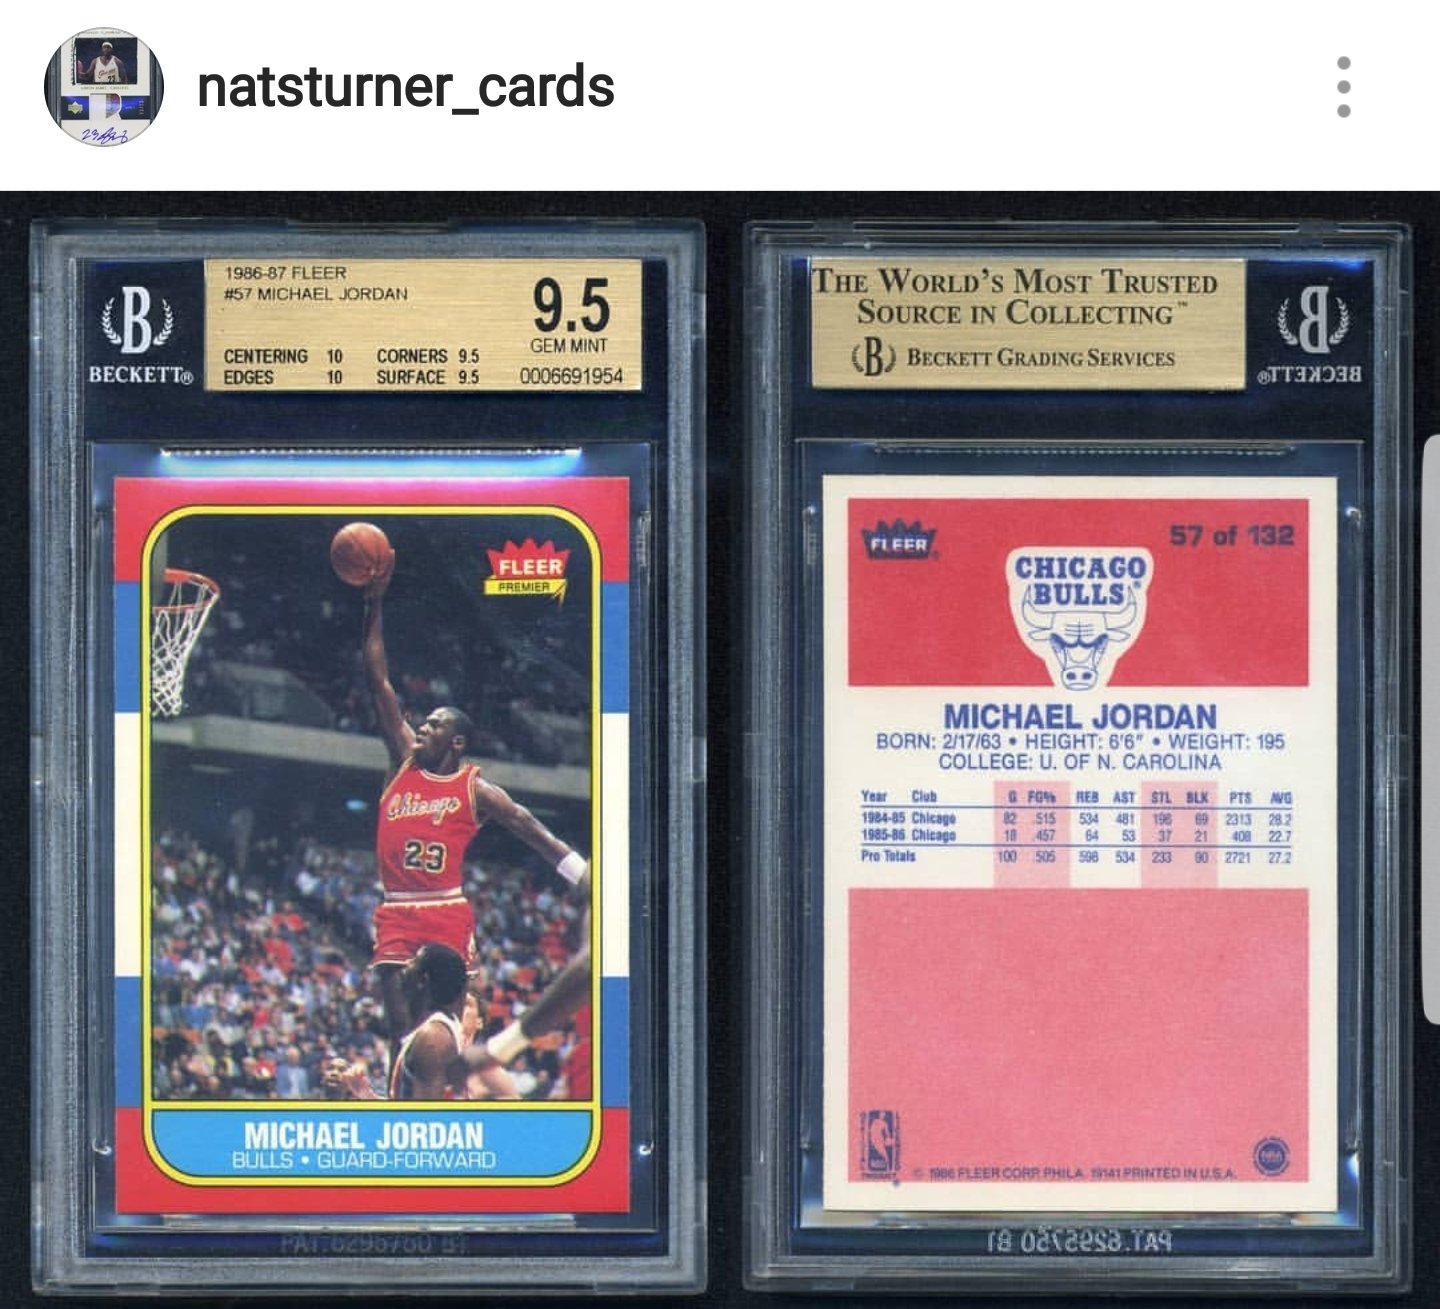 Nats Turner Cards Instagram